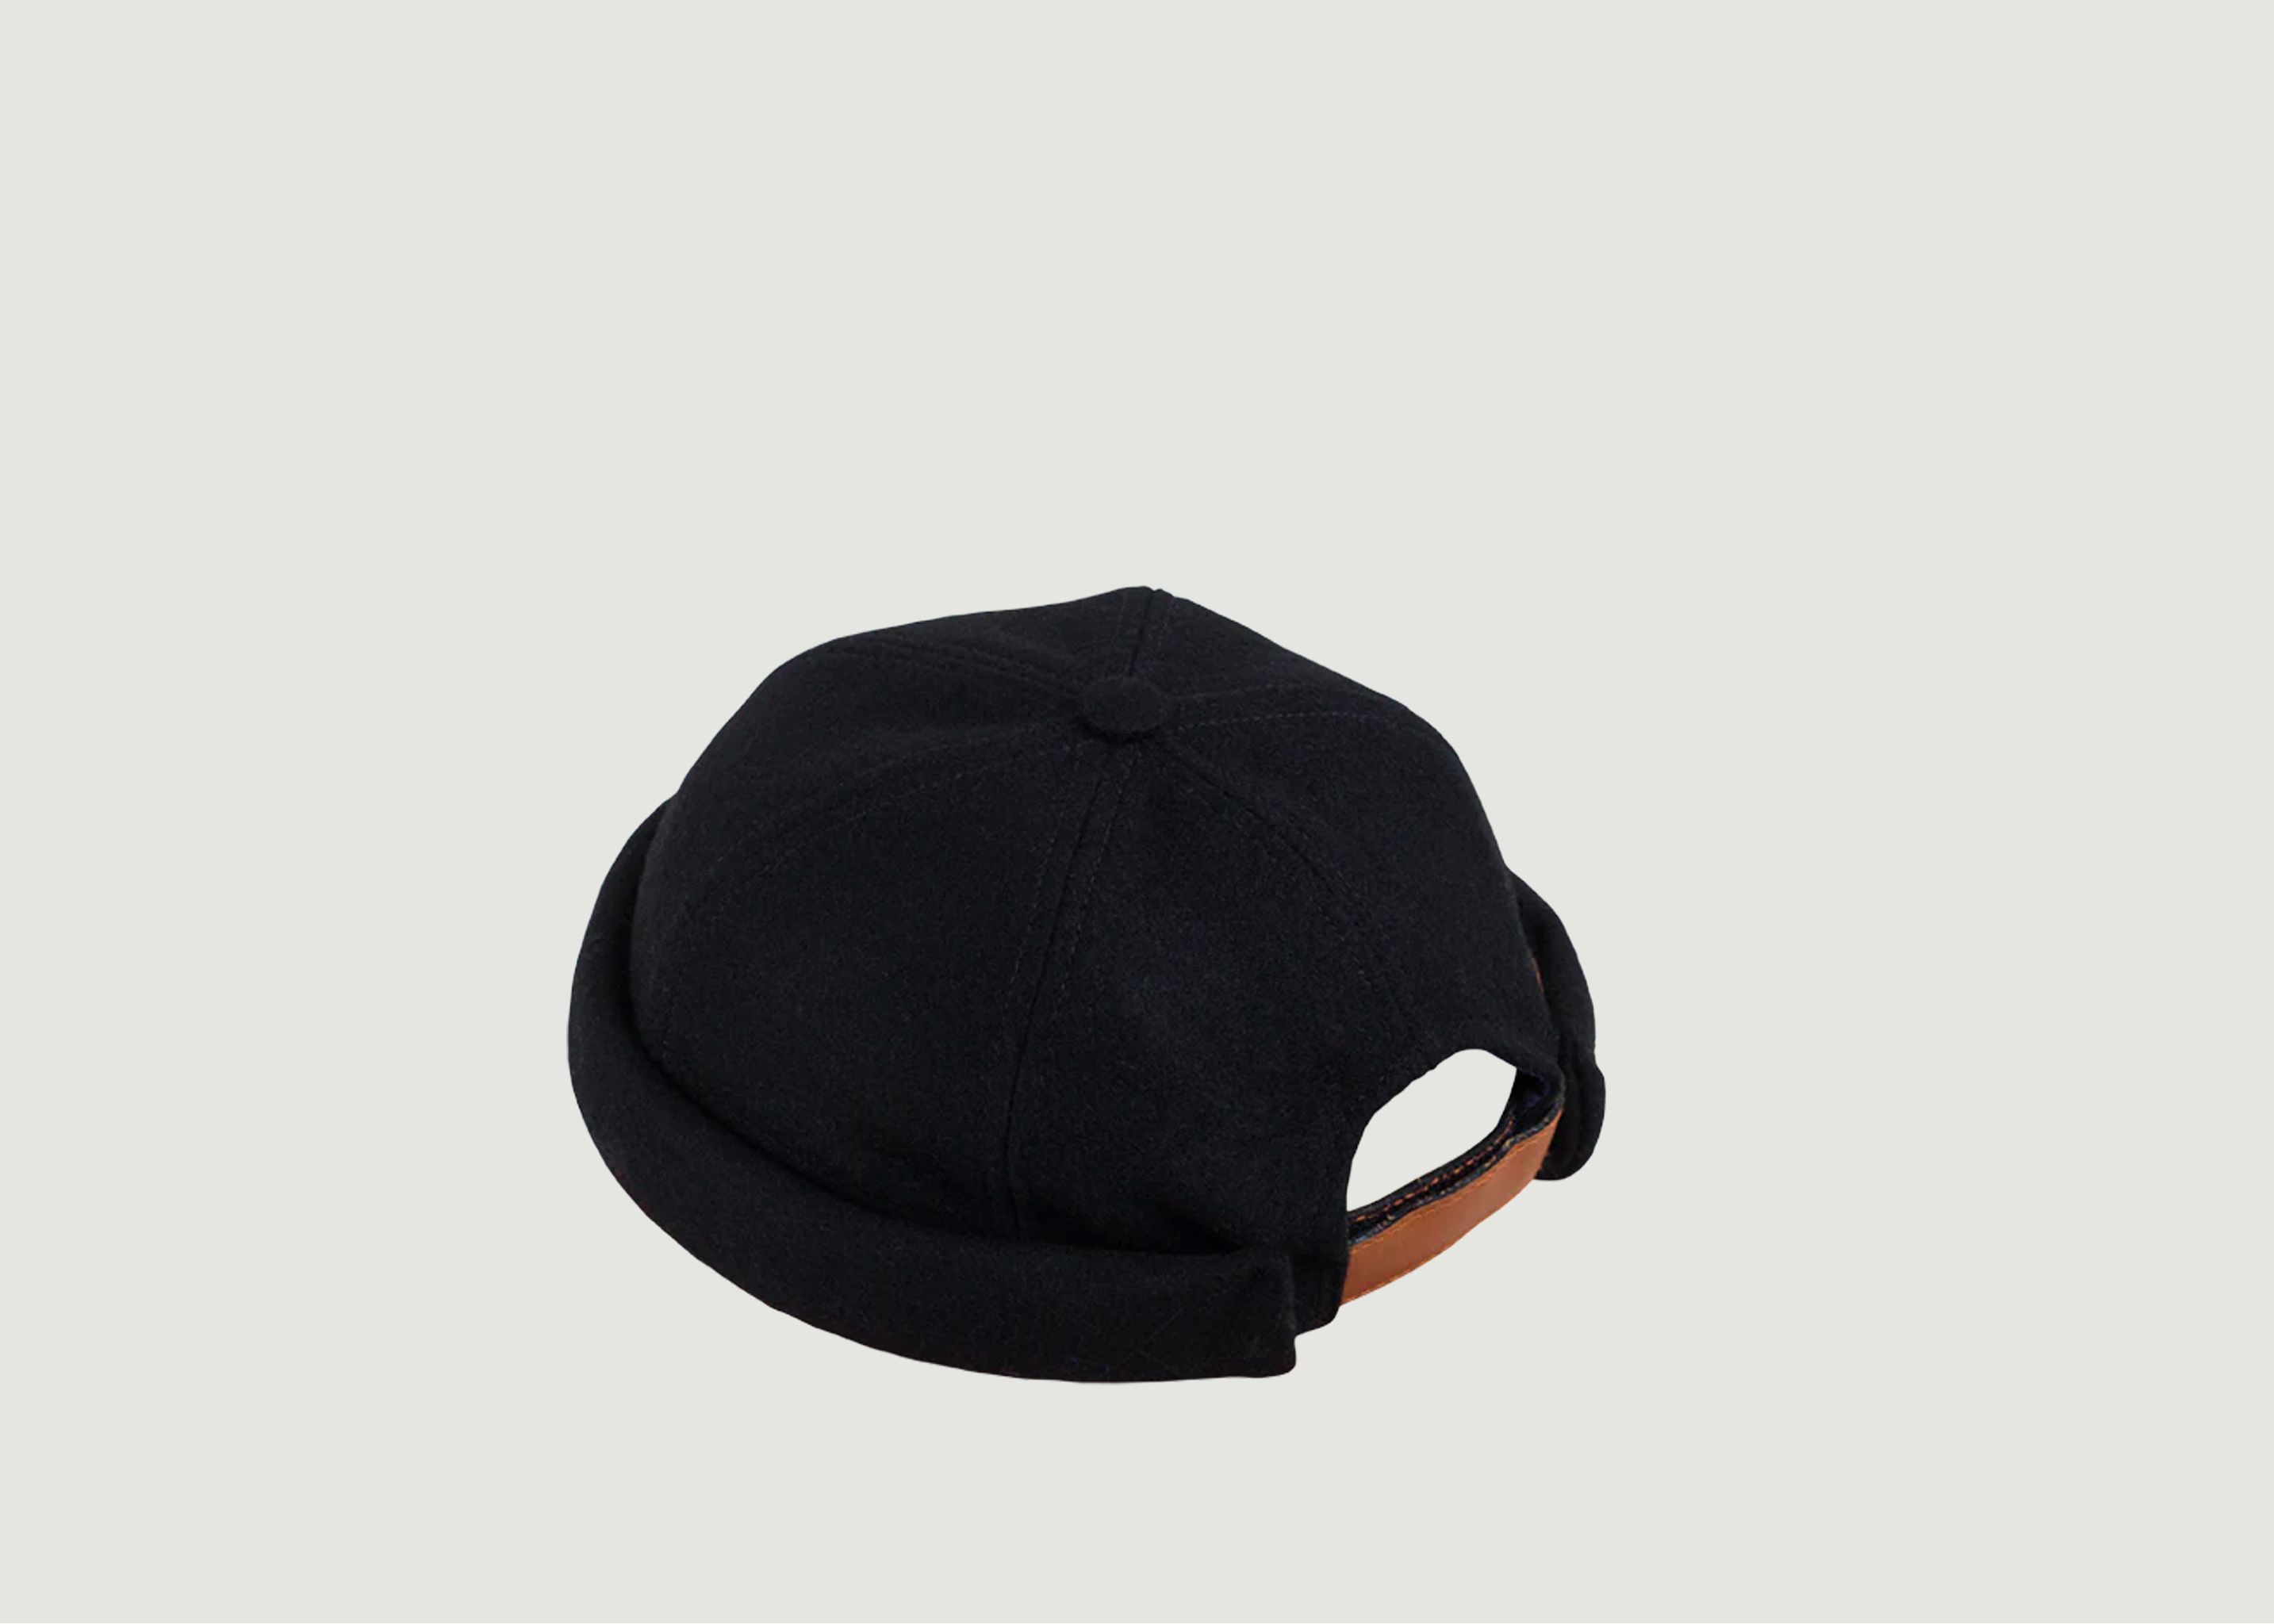 The best docker beanie - Miki hat in 2023